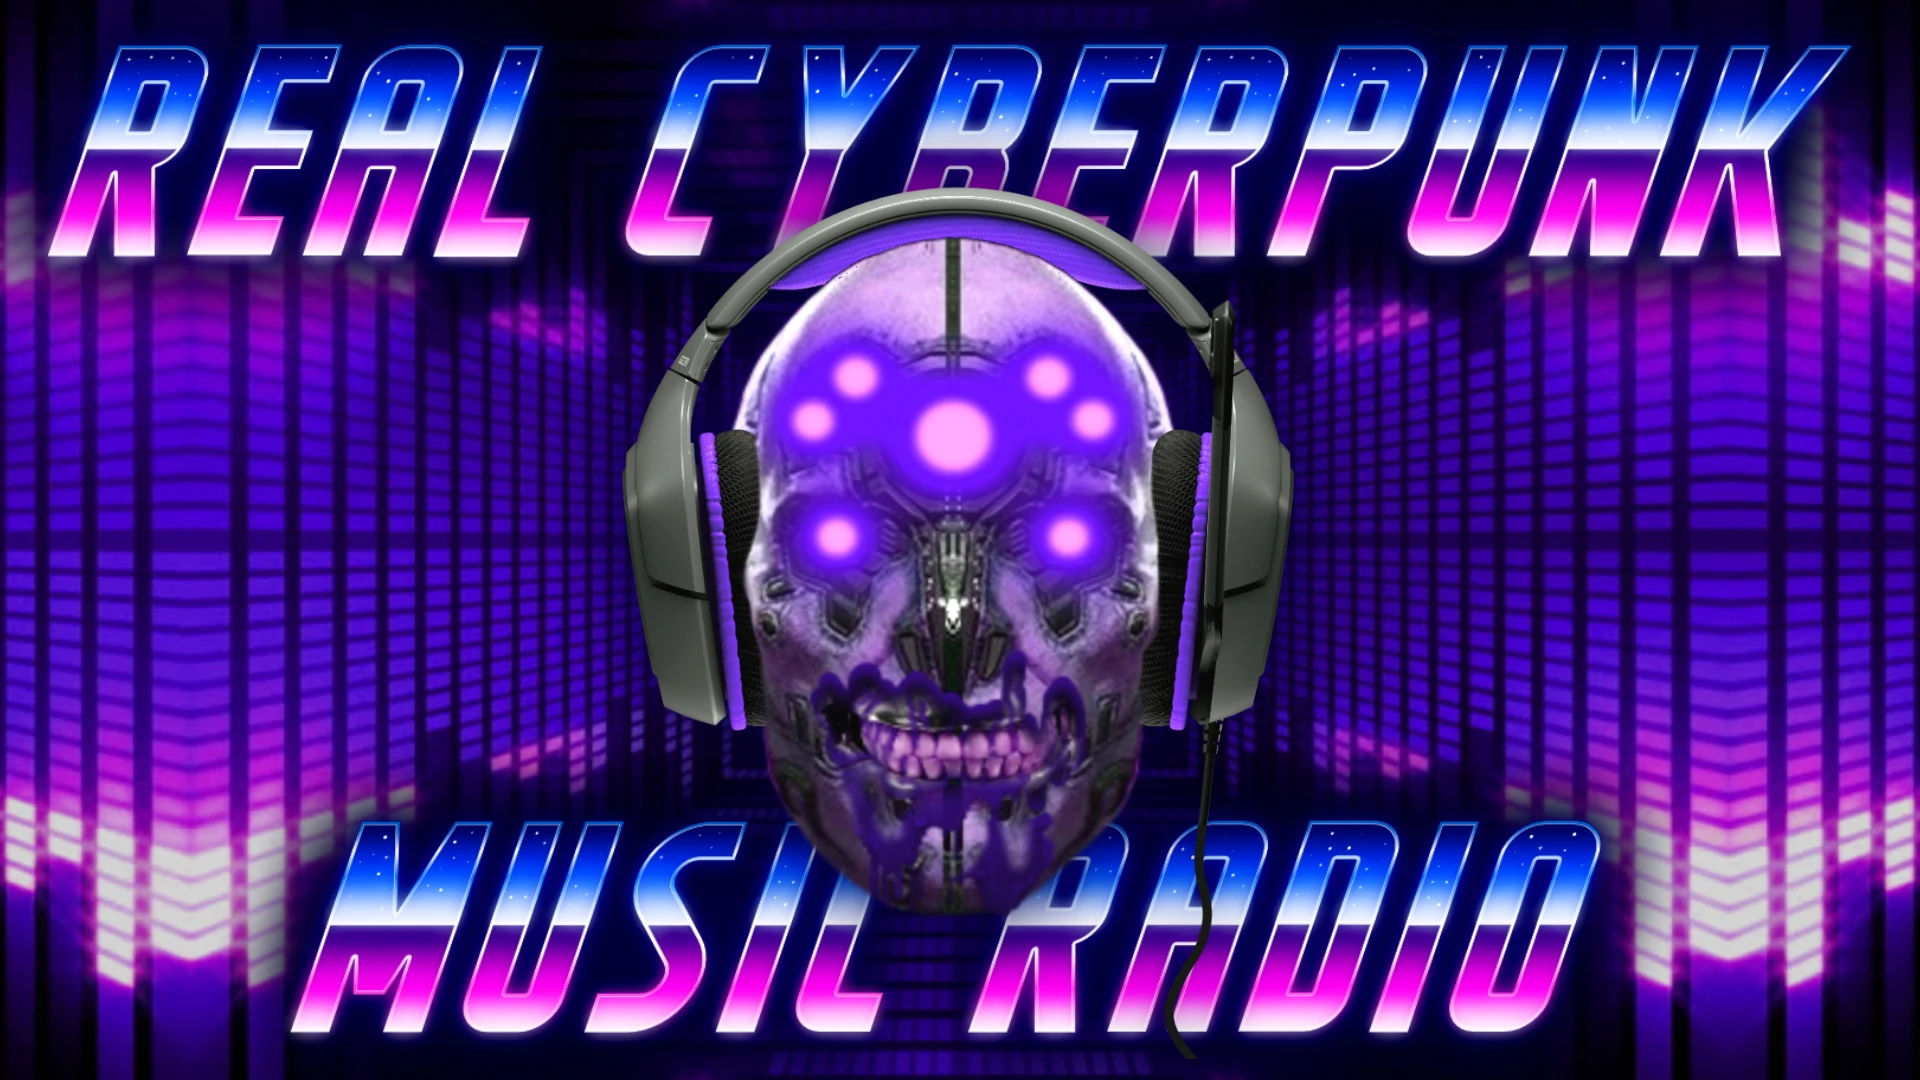 Radio ext cyberpunk фото 106